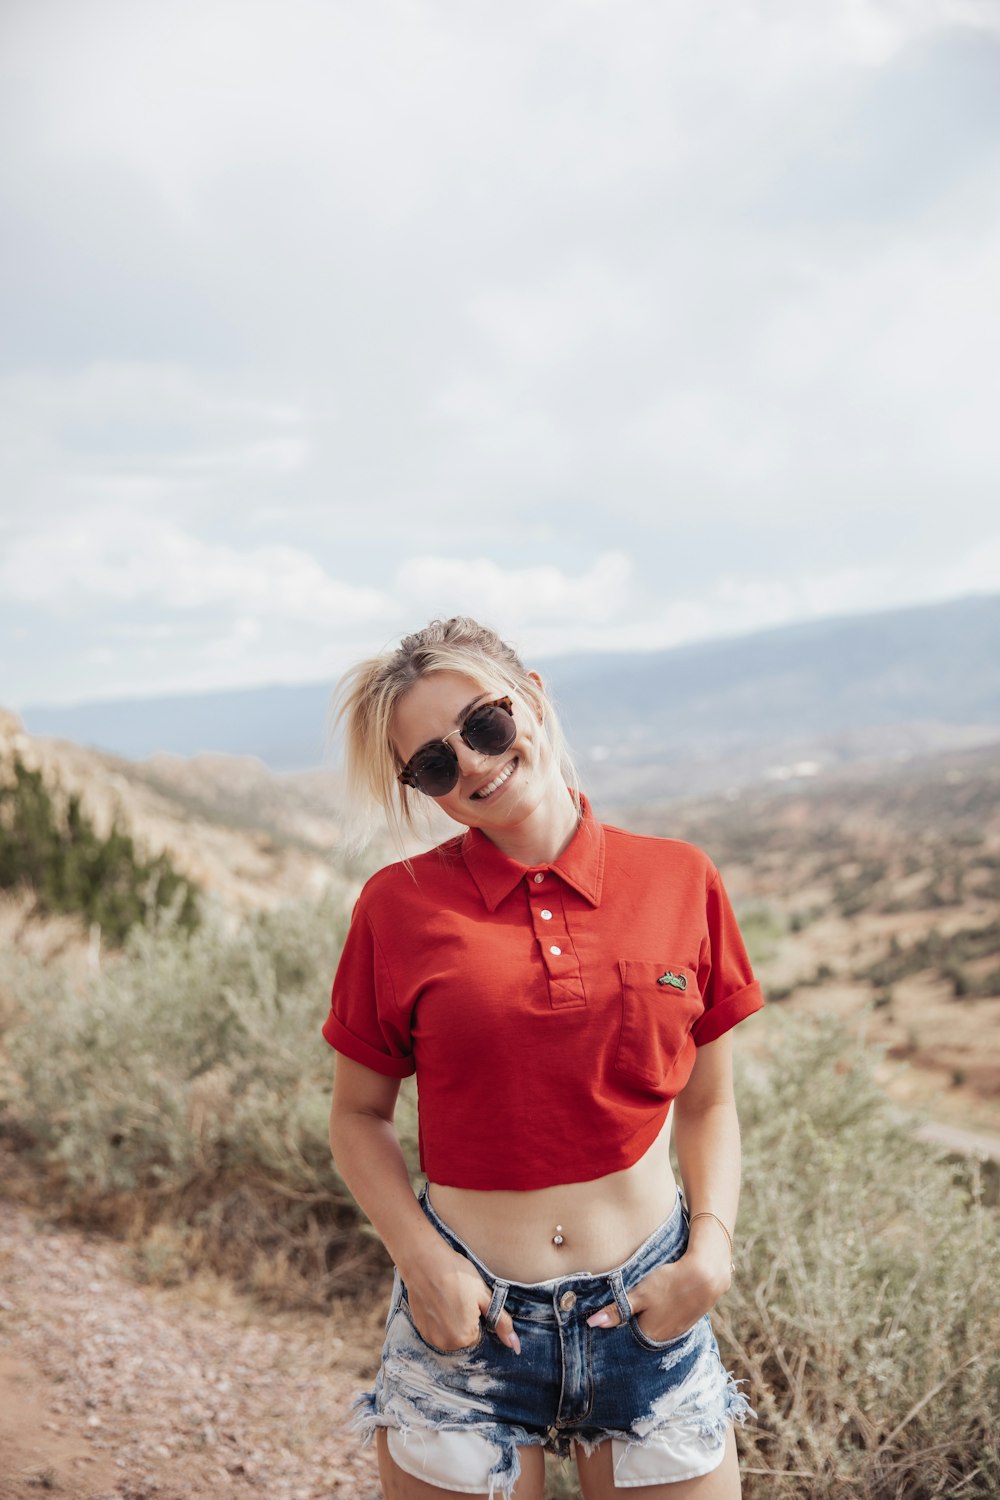 赤いクルーネックのTシャツとブルーデニムのデイジーデュークスが茶色の野原に立つ女性